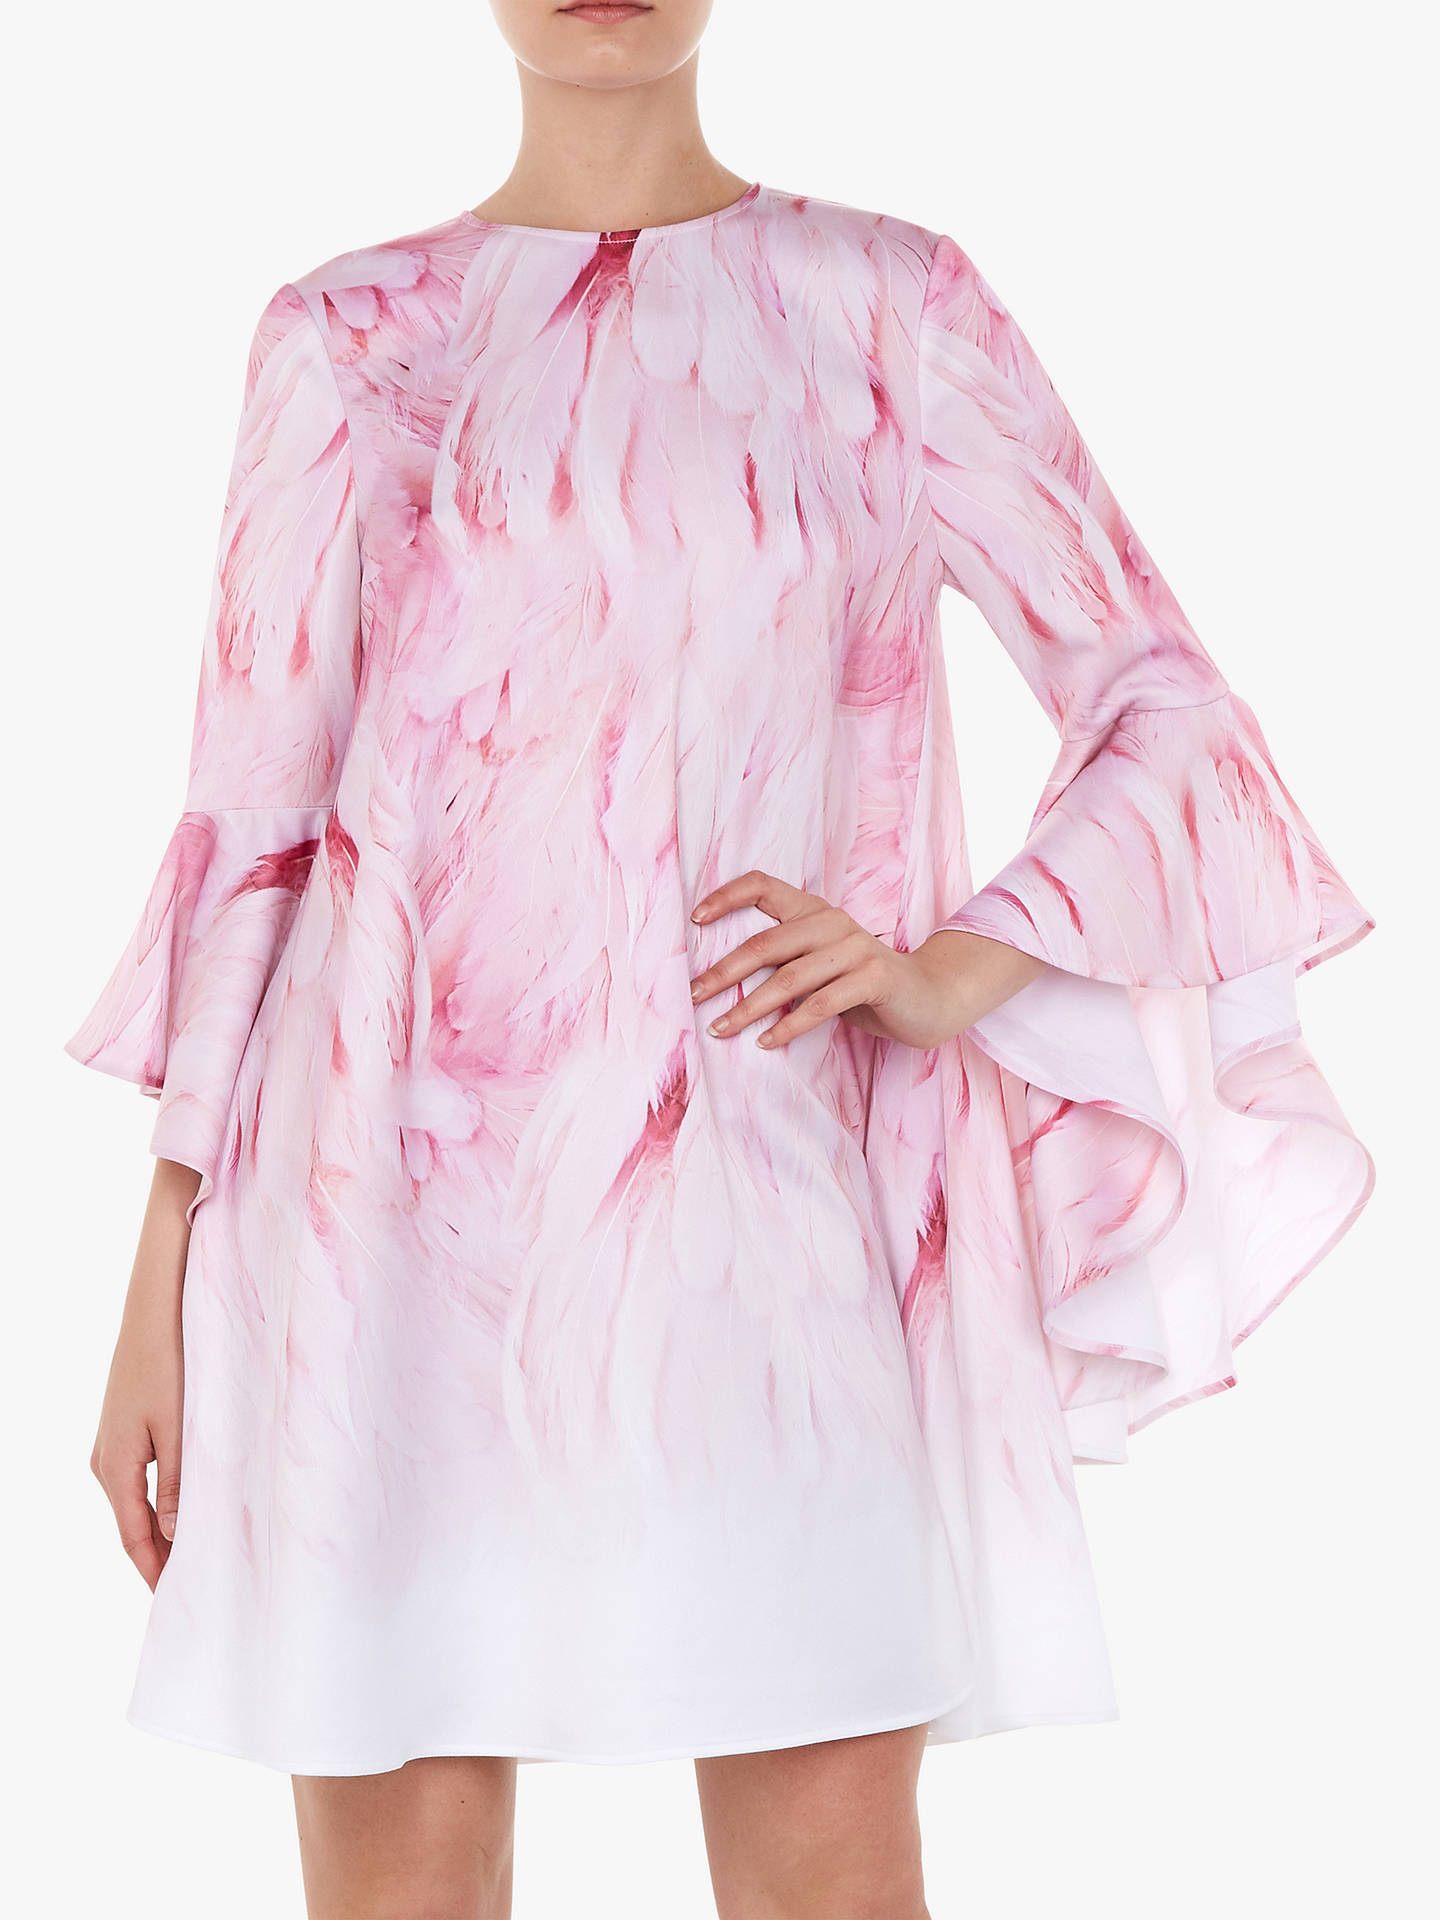 Ted Baker Sareina Sleeve Dress, Pink at John Lewis & Partners